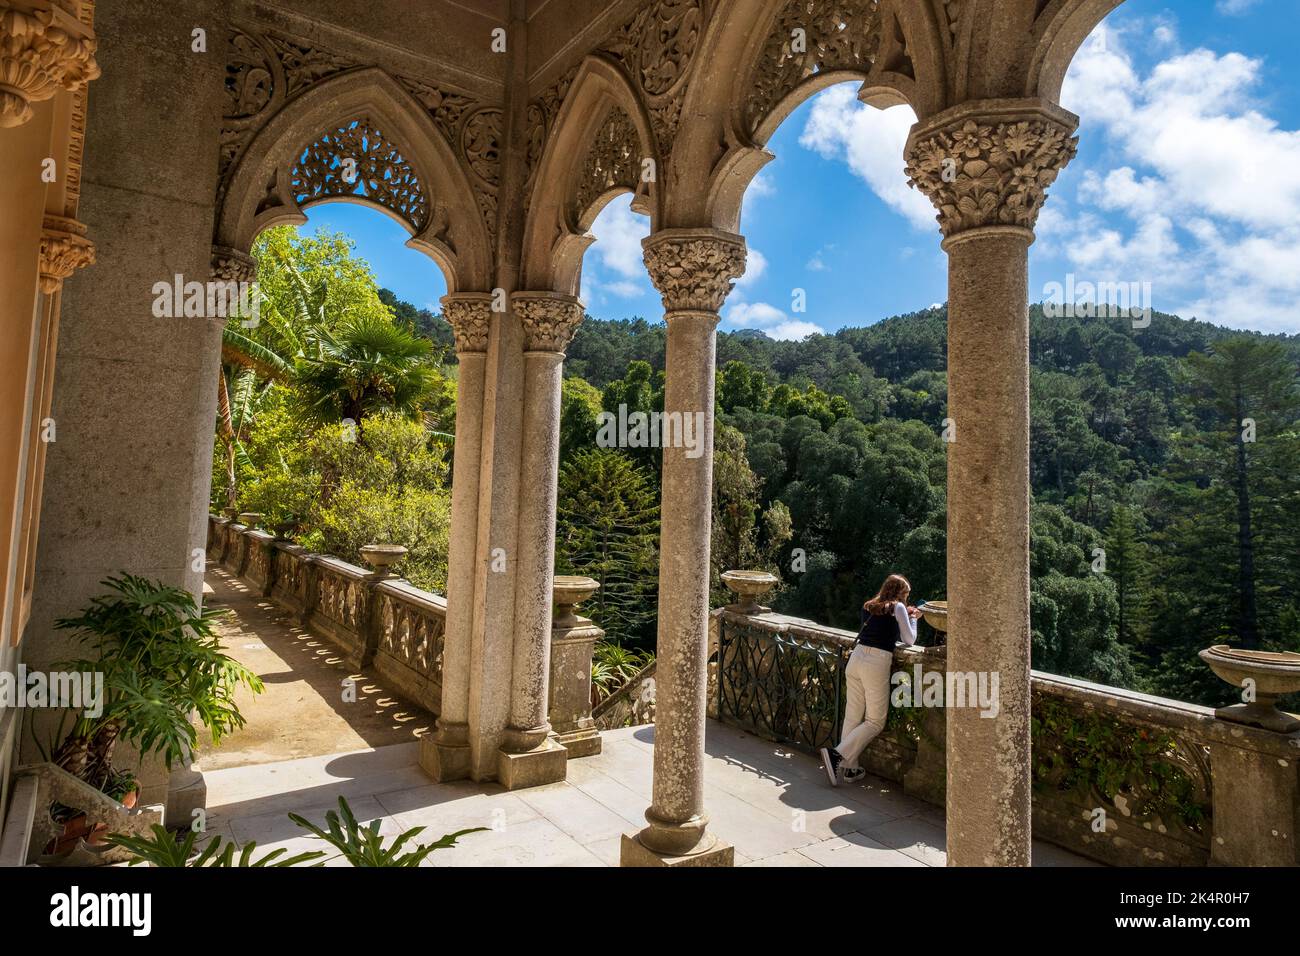 Columnas italianas en el Palacio do Monserrate, Sintra, Portugal Foto de stock